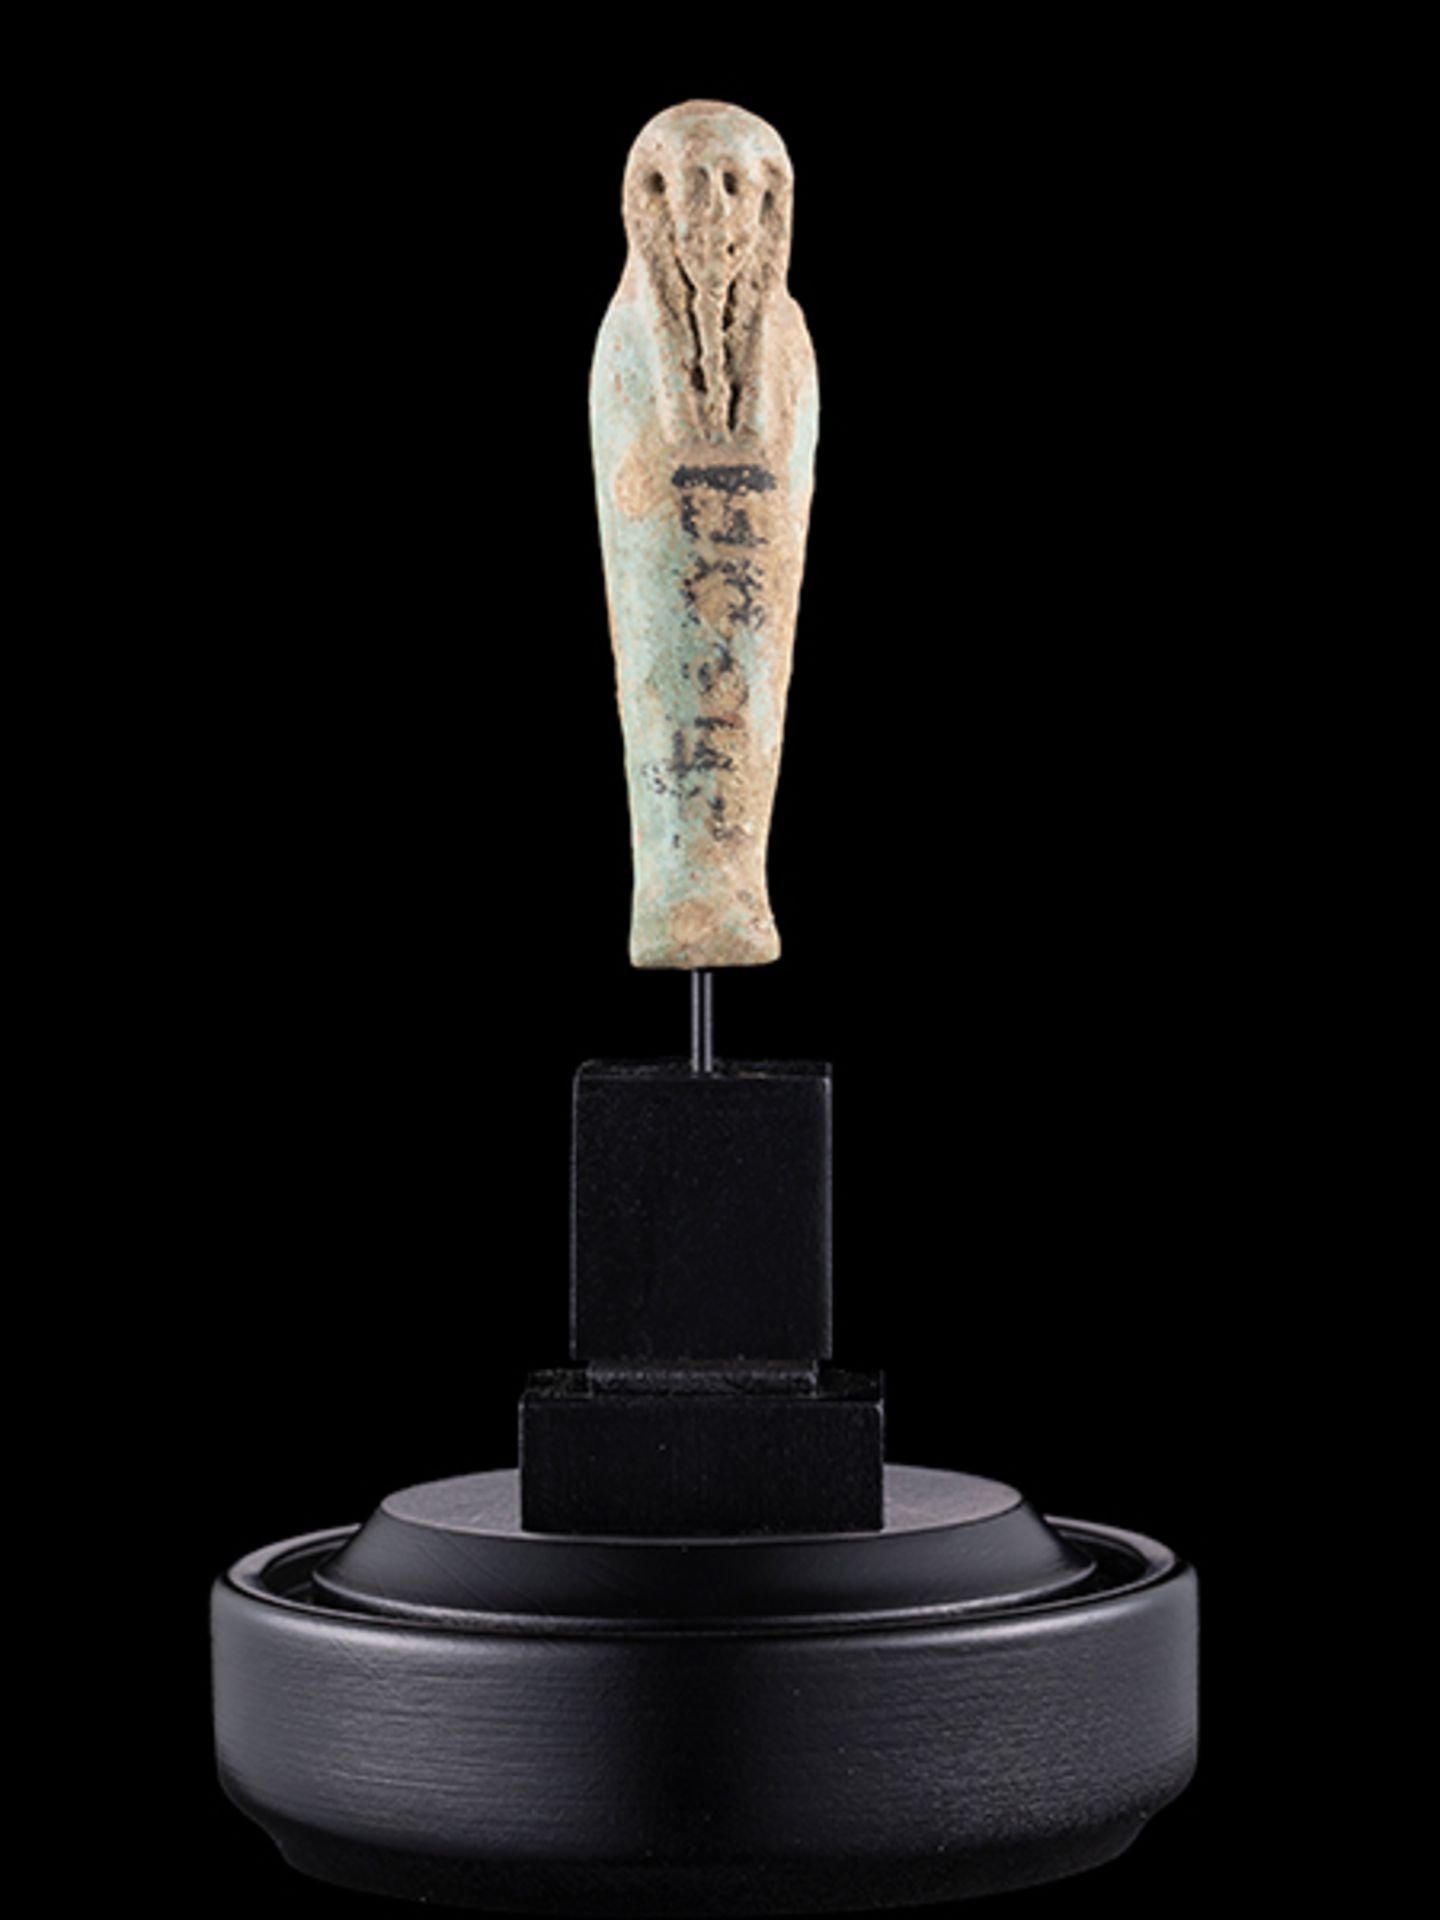 Uschebti Höhe: 8 cm. Ägypten, Ptolemäische Dynastie, 332-31 v. Chr. Fayence, türkis mit schwarzer